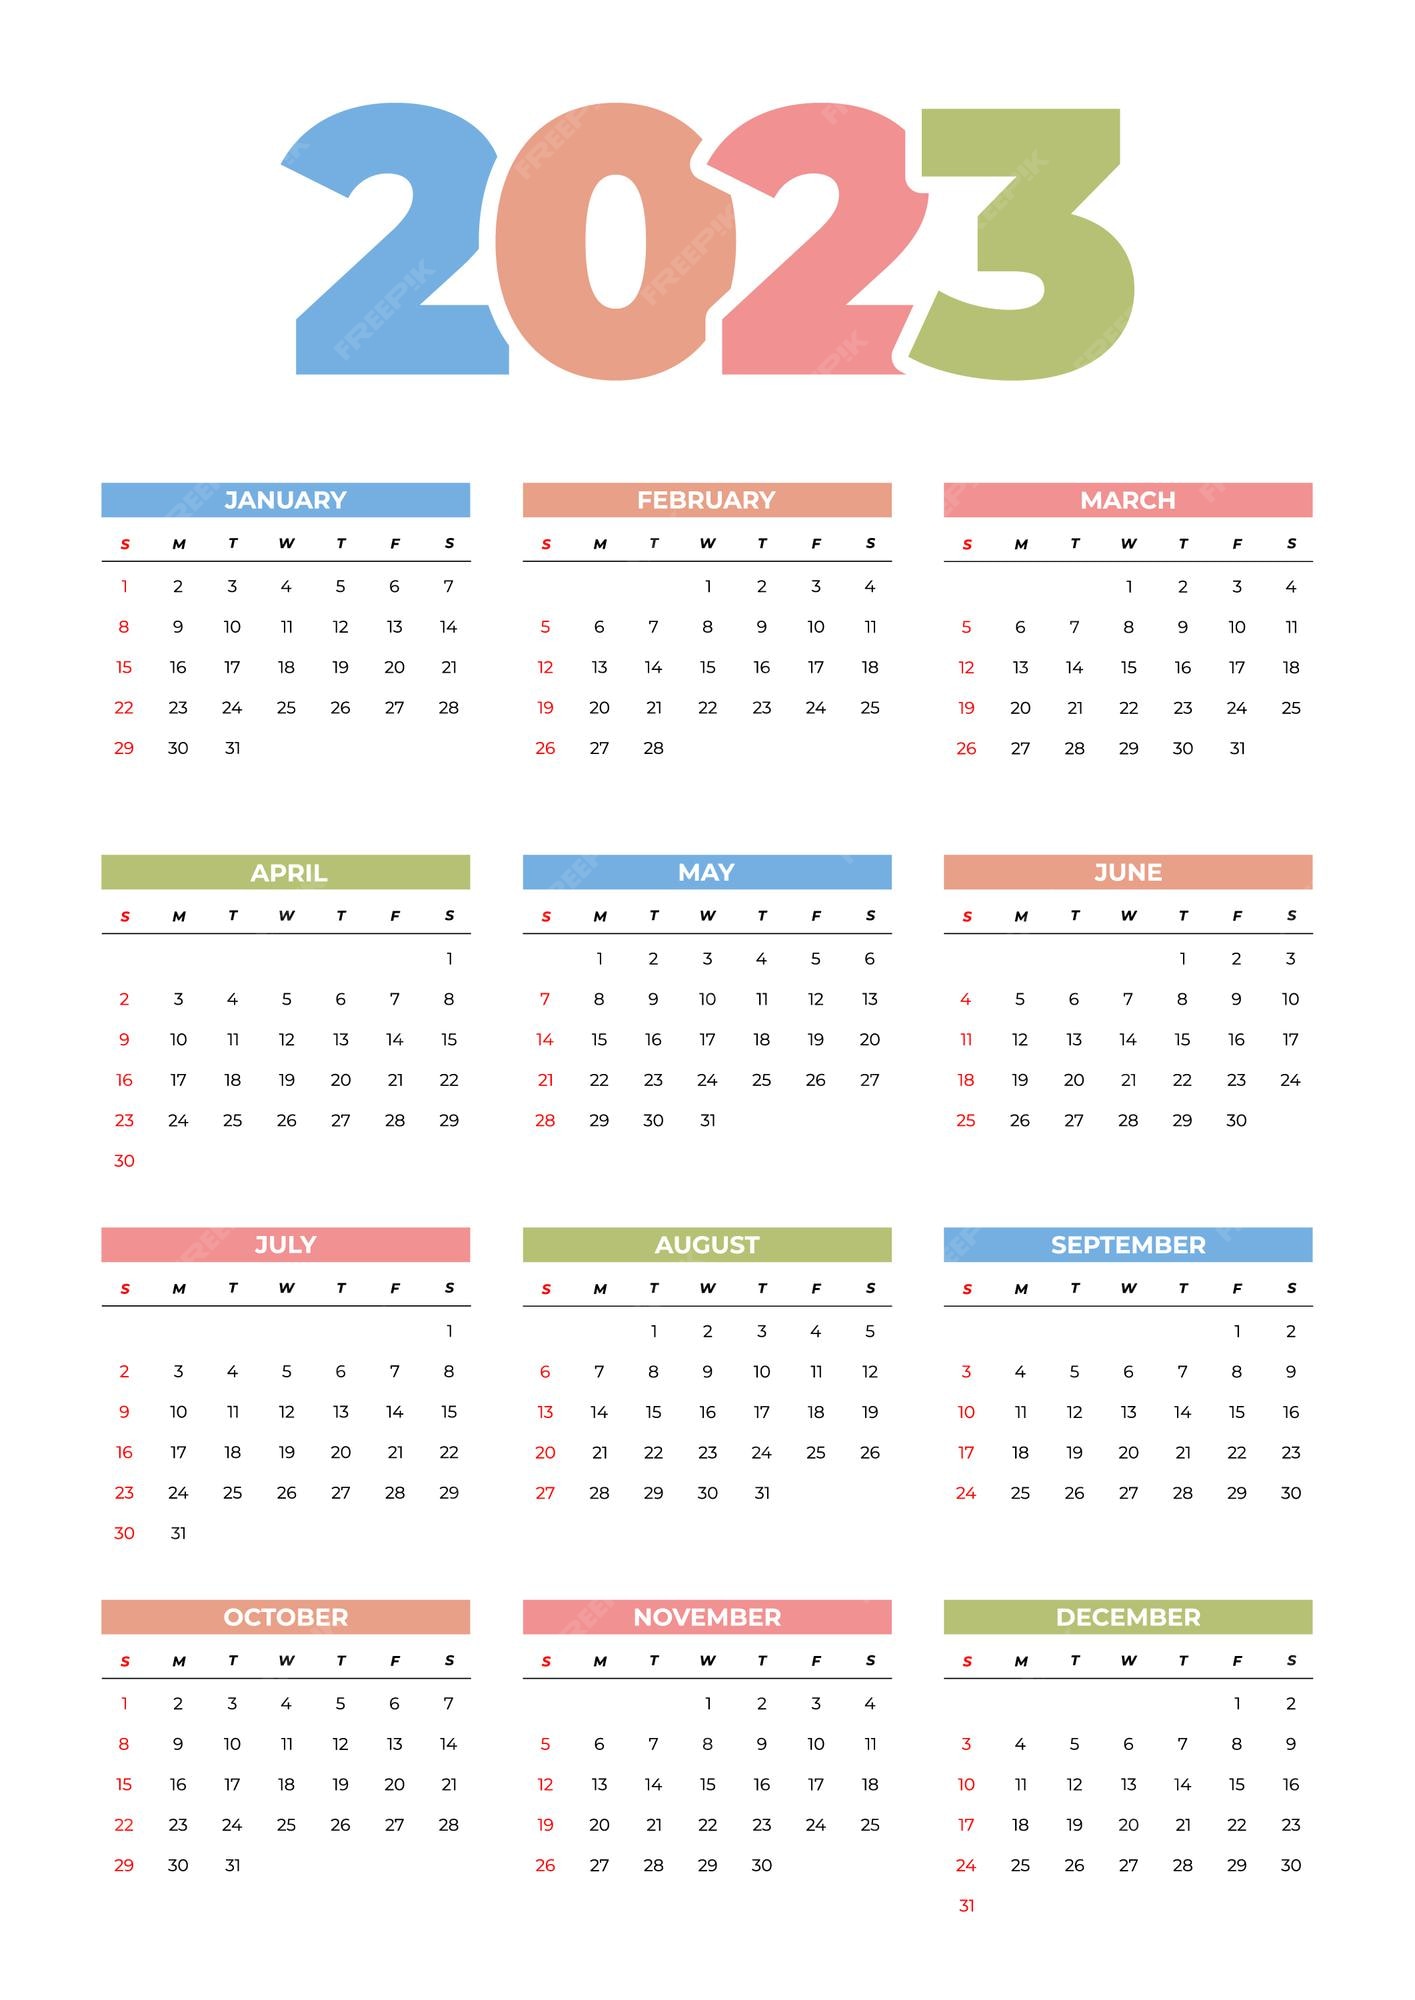 calendar-2023-template-excel-get-calendar-2023-update-riset